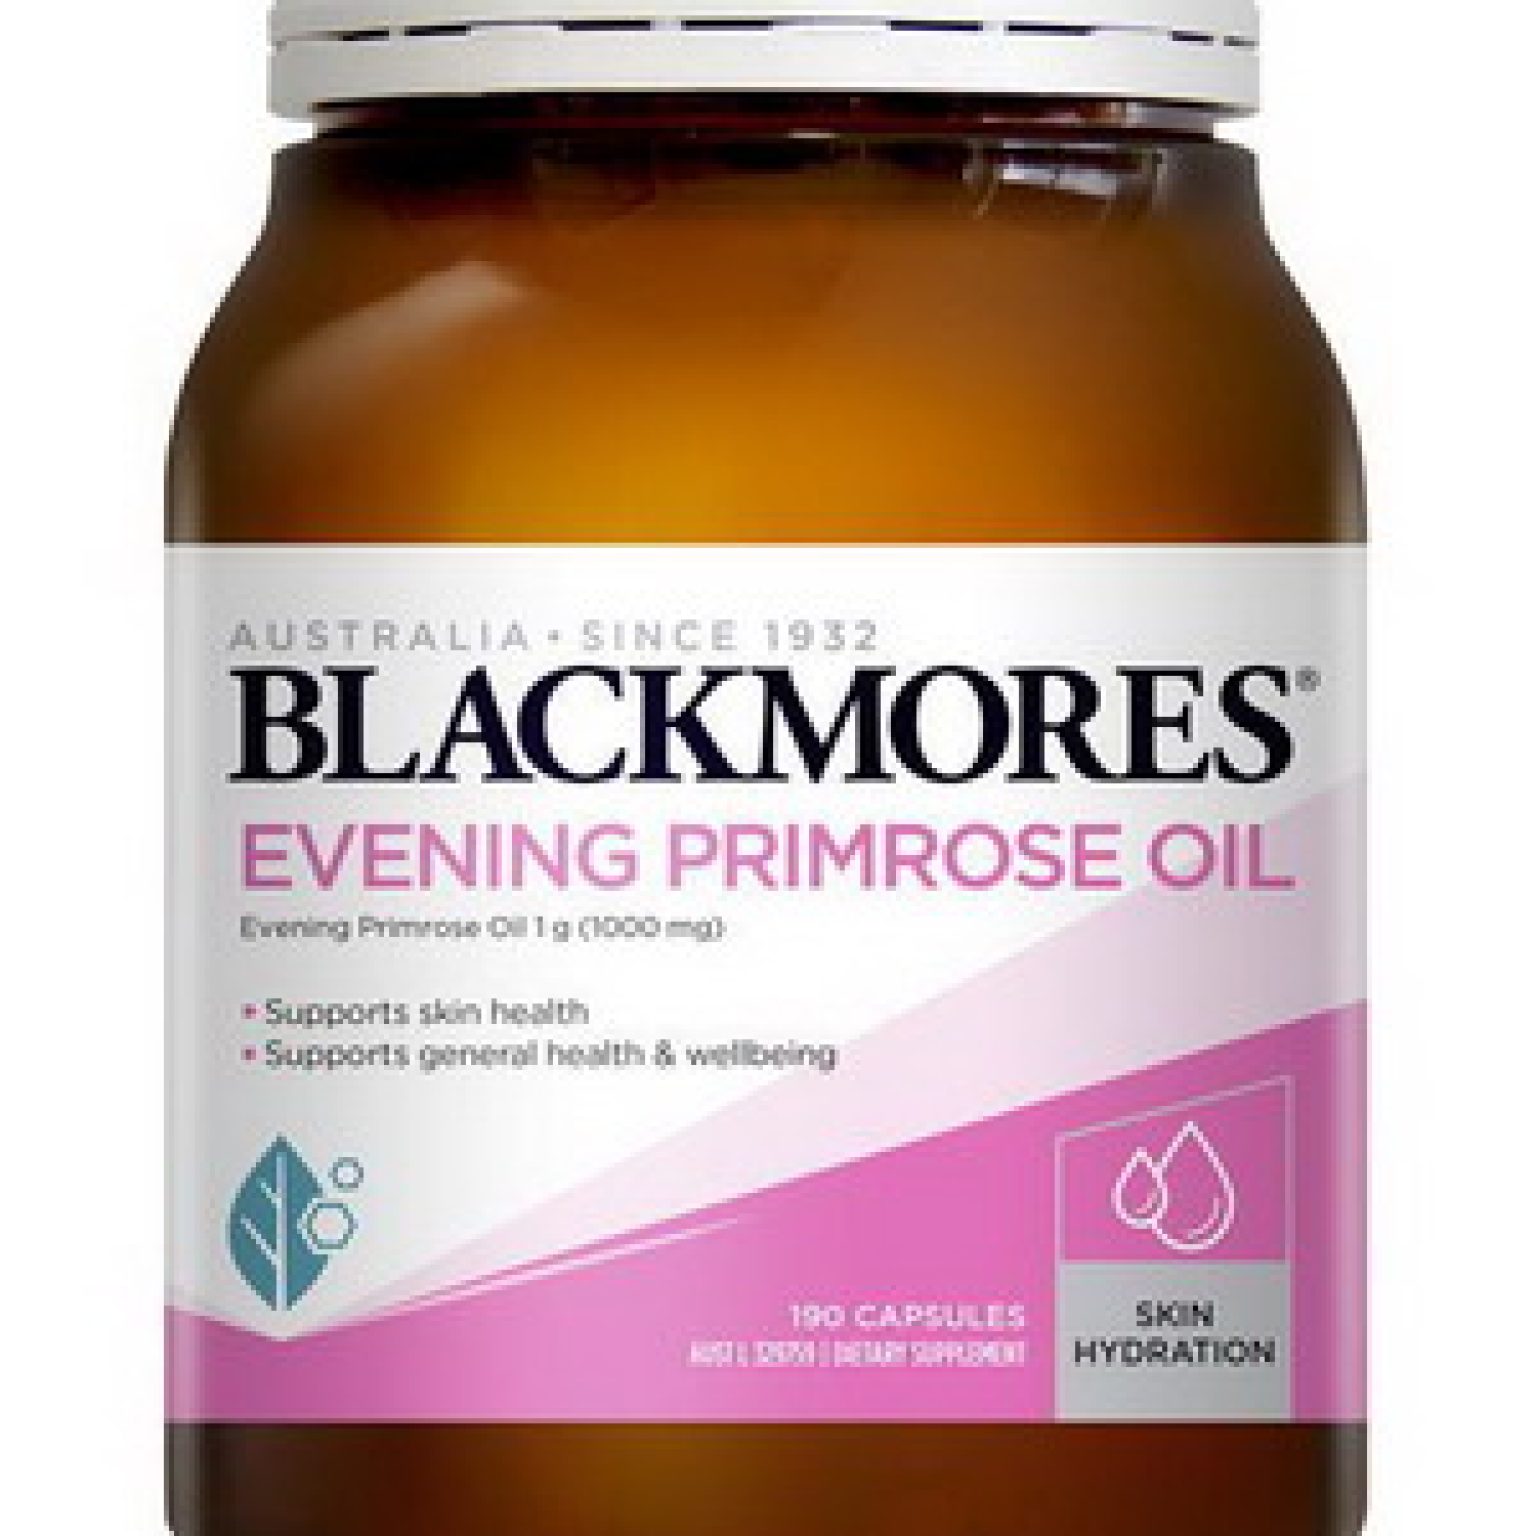 Tinh dầu hoa Anh Thảo BlackMores - mẫu mới 2020